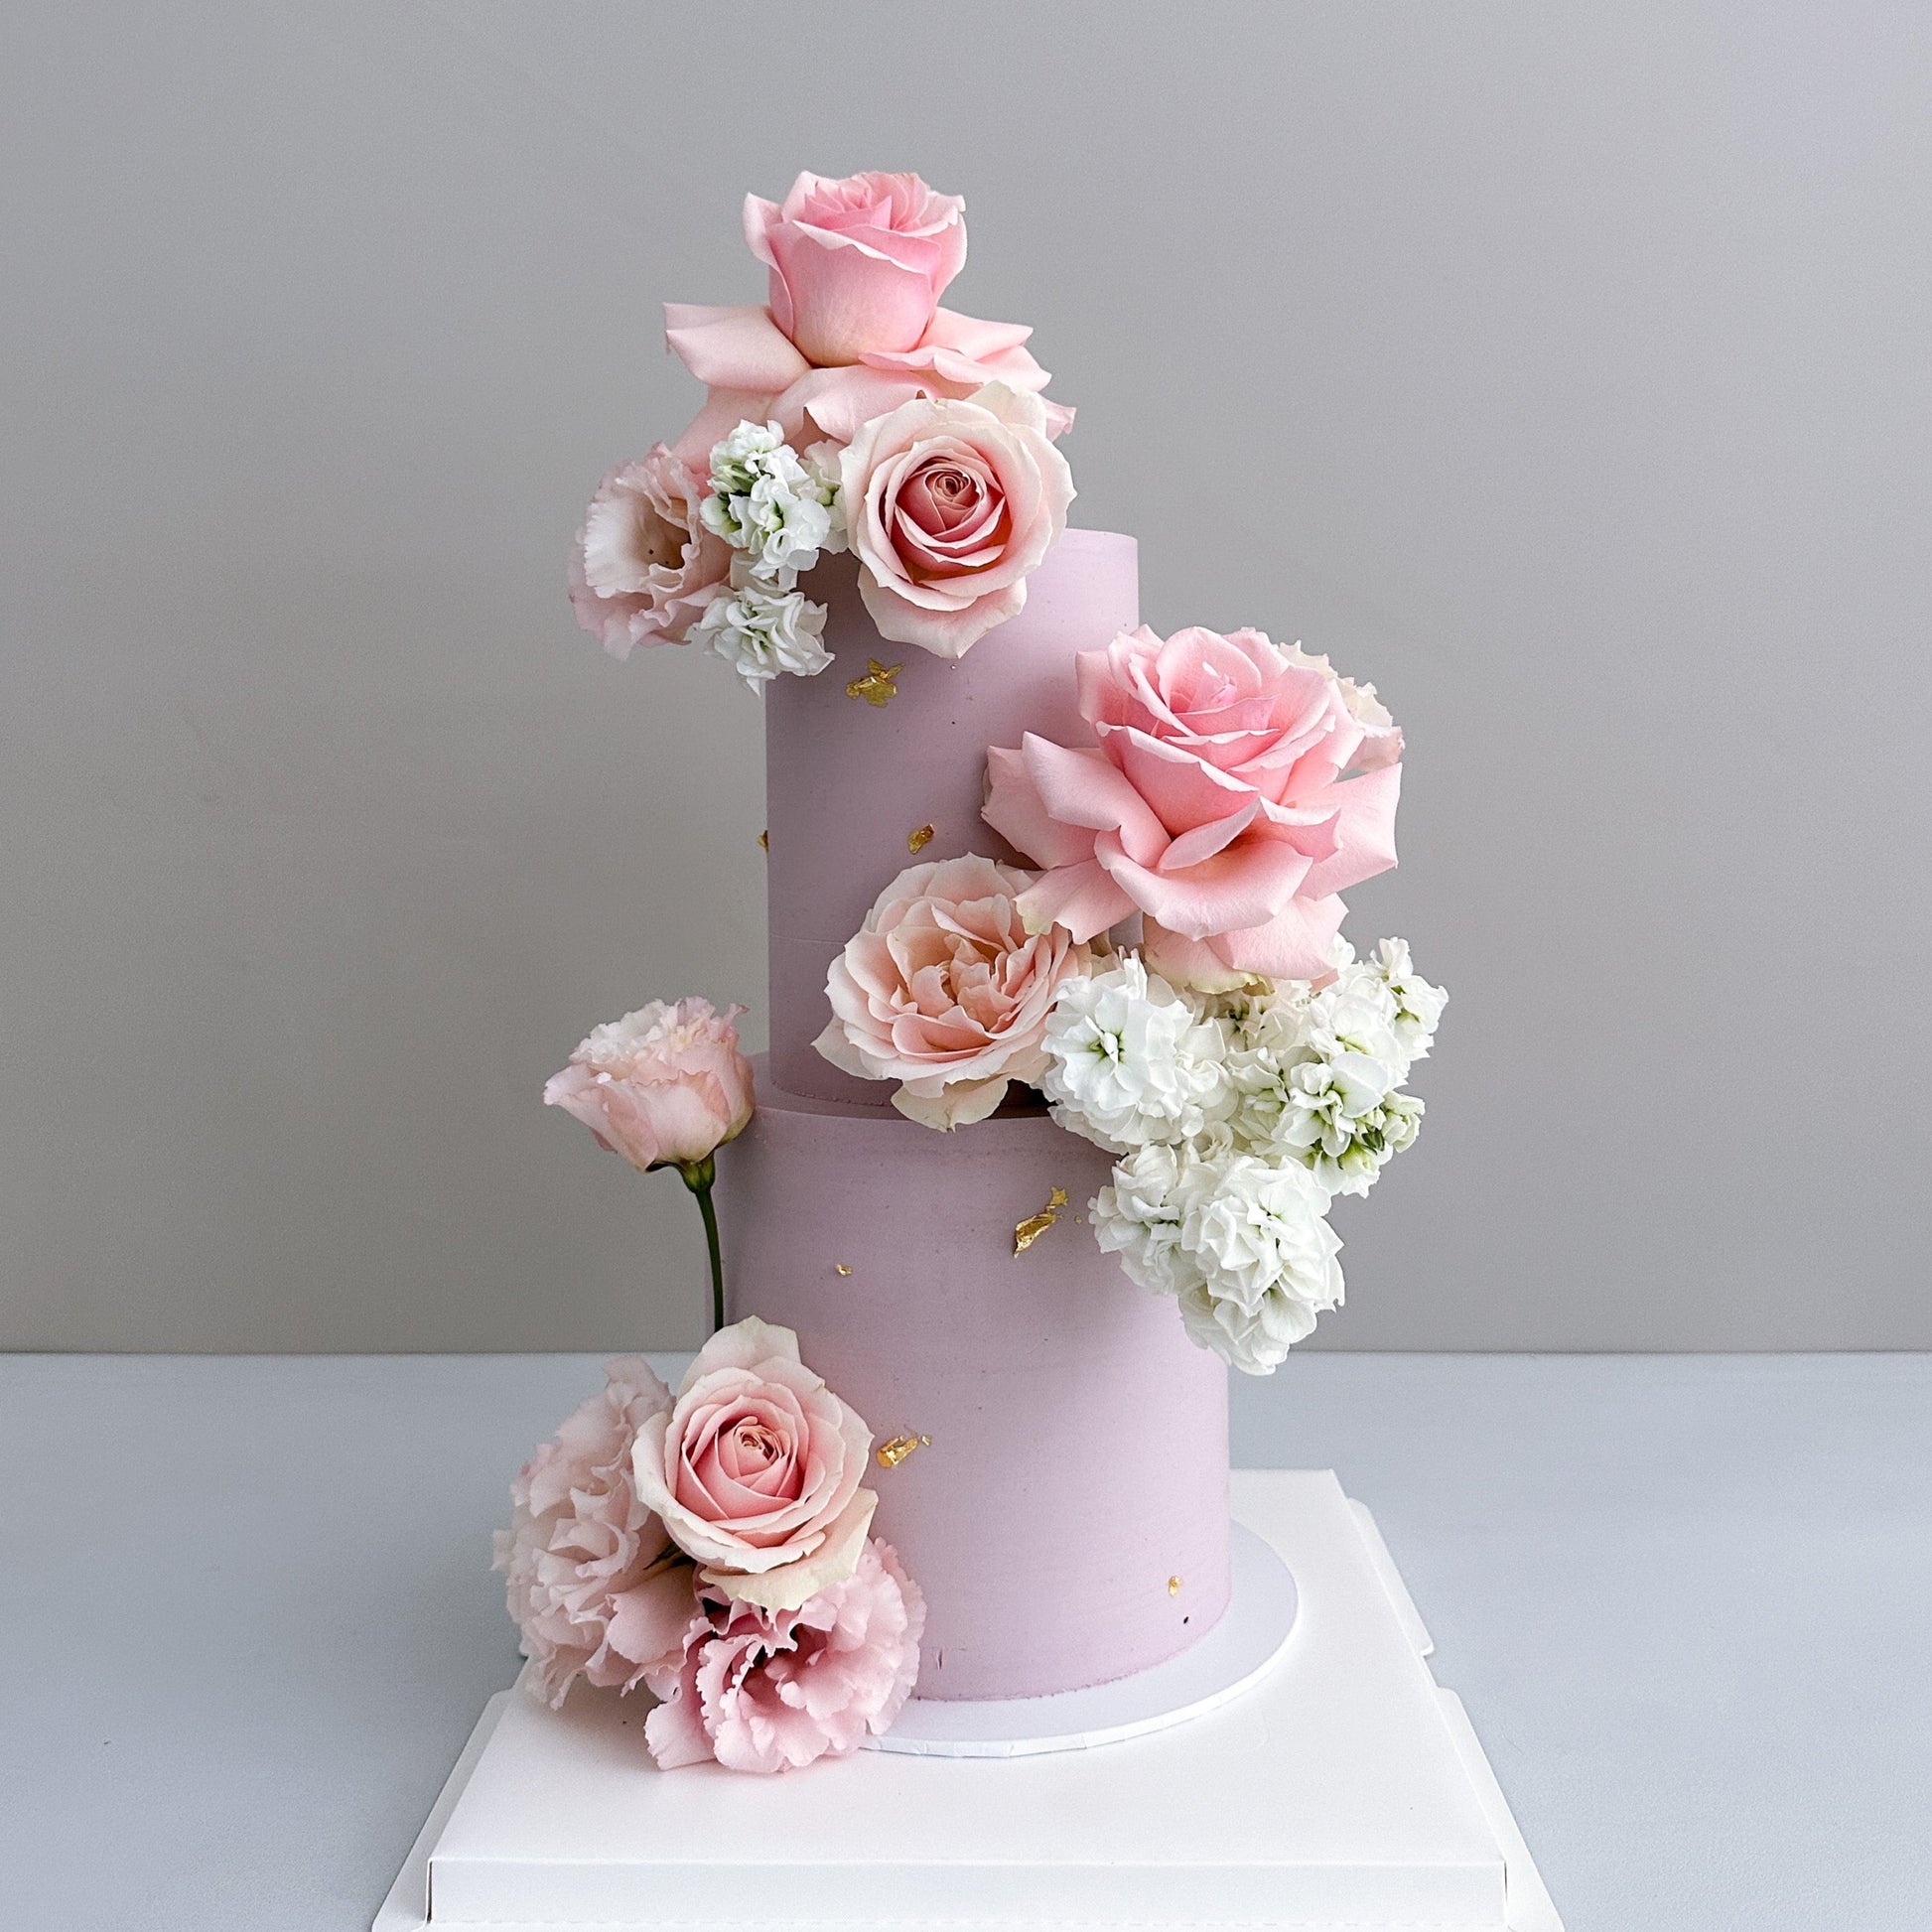 FLOWER VASE CAKE 